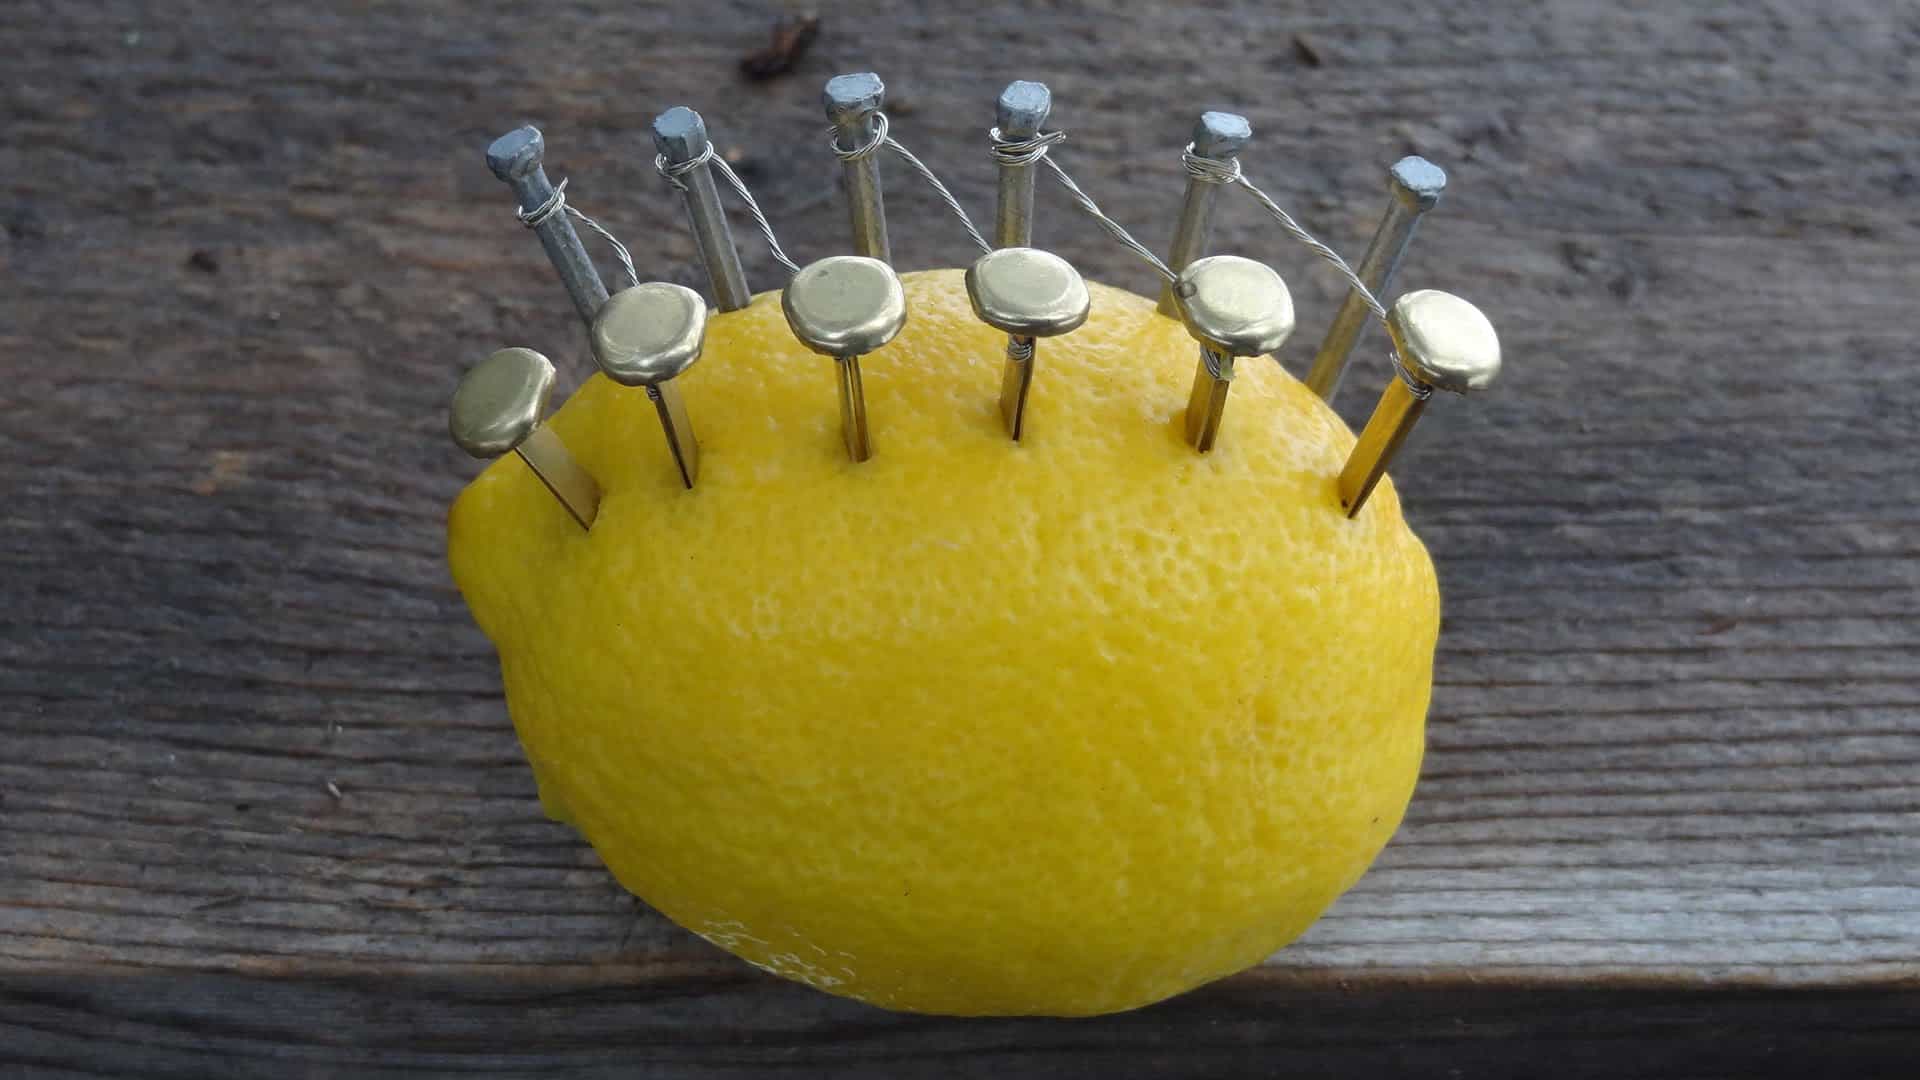 Как разжечь огонь с помощью лимона